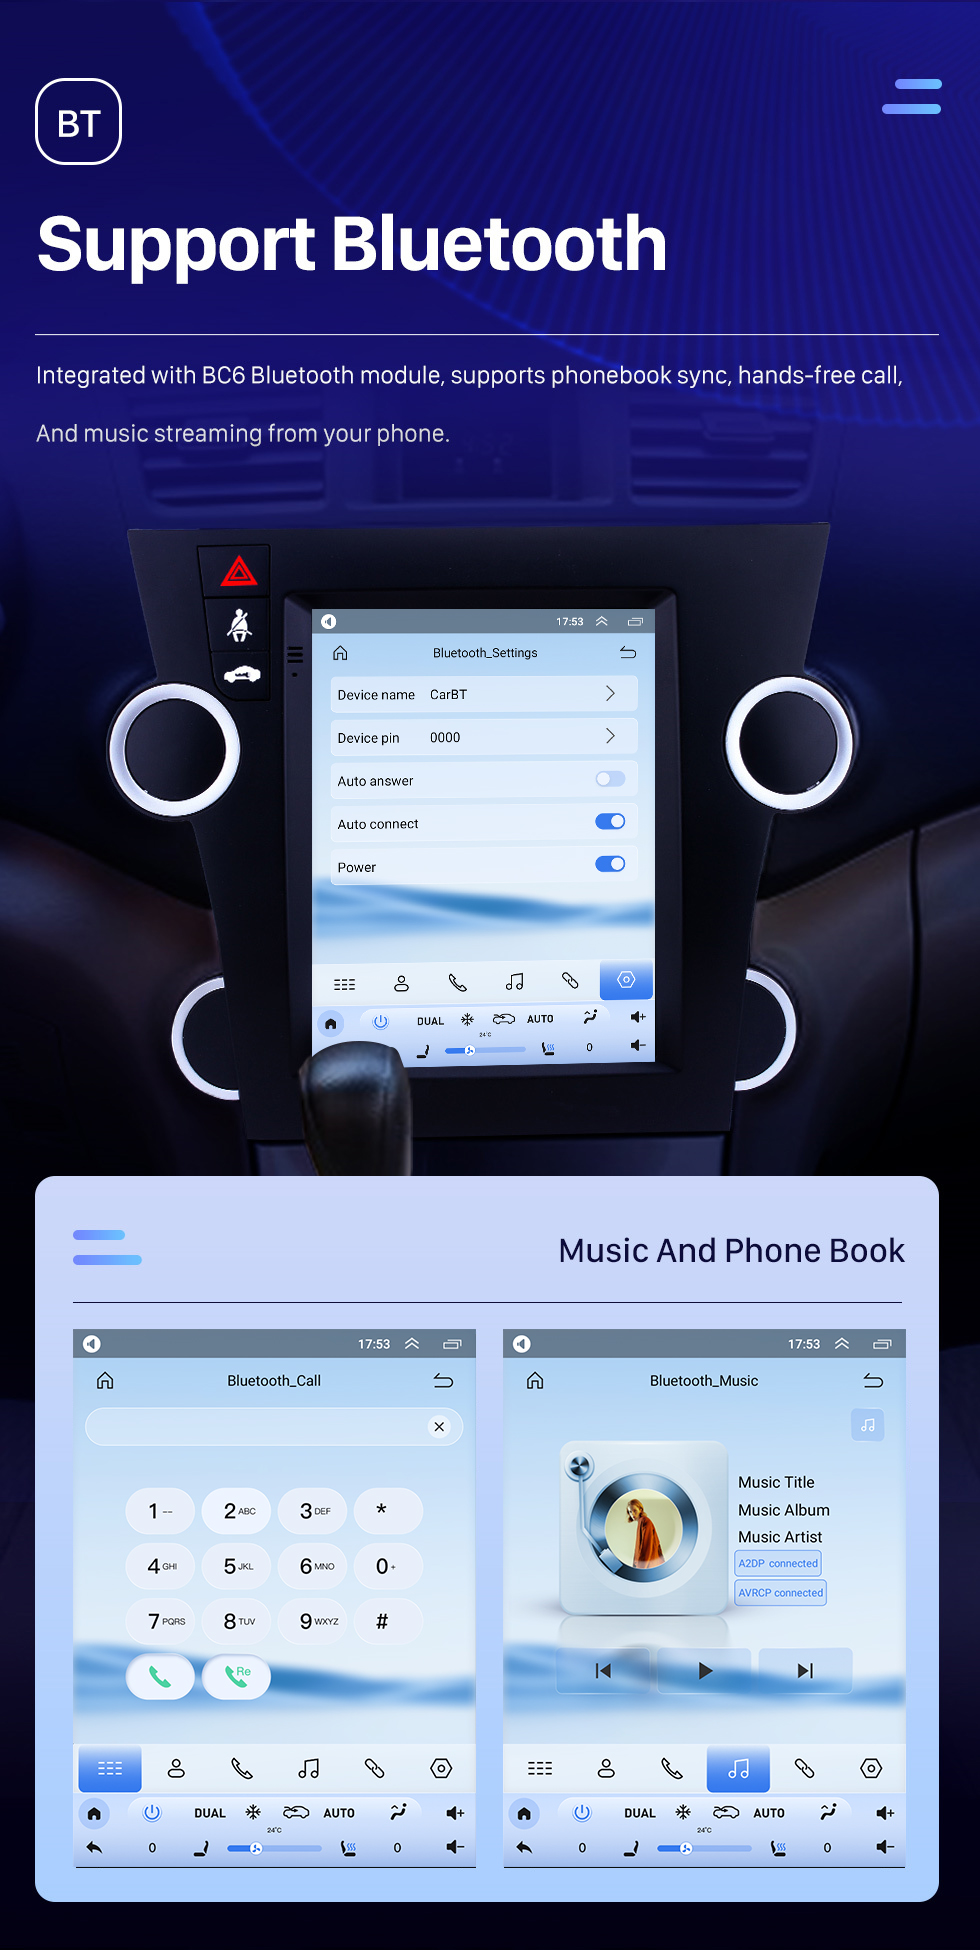 Seicane Android 10.0 9,7-дюймовый GPS-навигатор для Toyota Highlander 2009–2014 годов с сенсорным экраном HD Bluetooth WIFI AUX с поддержкой Carplay Mirror Link OBD2